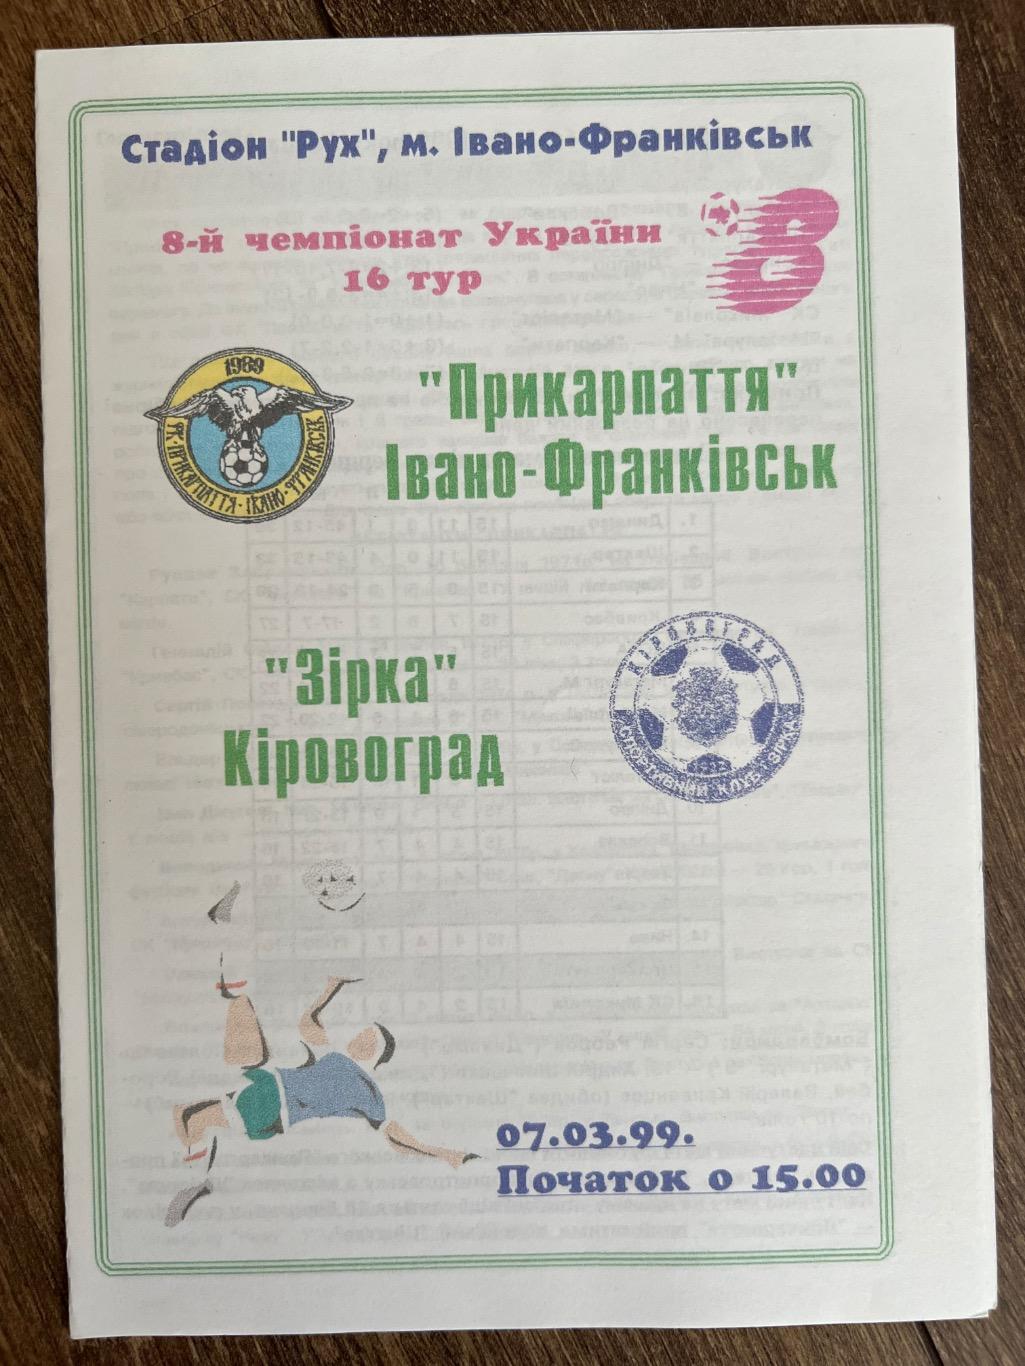 Прикарпатье Ивано-Франковск - Звезда Кировоград 1998-1999